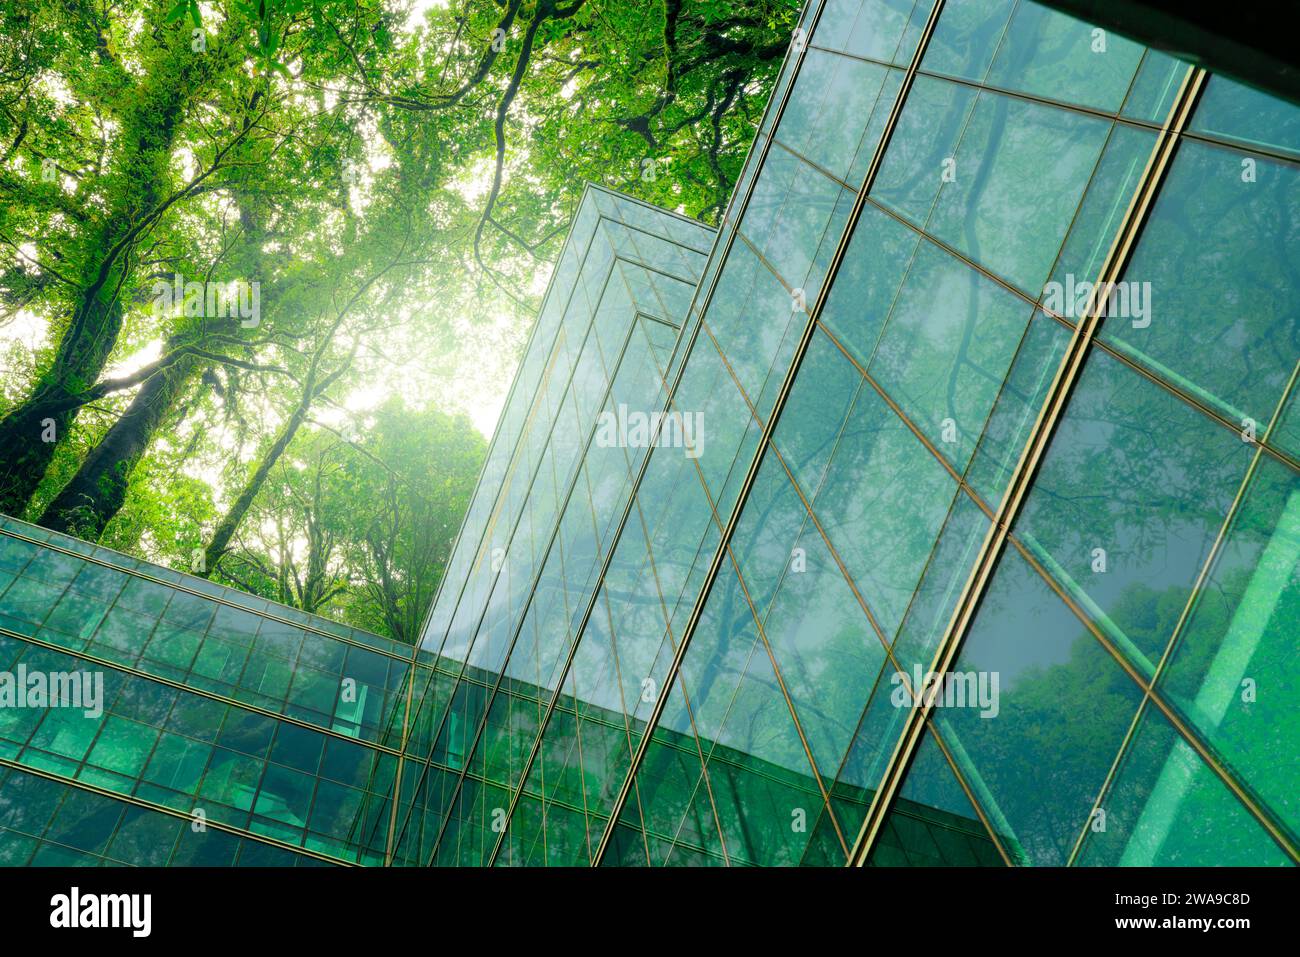 Bâtiment écologique dans la ville moderne. Immeuble de bureaux en verre durable avec arbres pour réduire le CO2. Architecture verte. Bâtiment avec environnement vert Banque D'Images